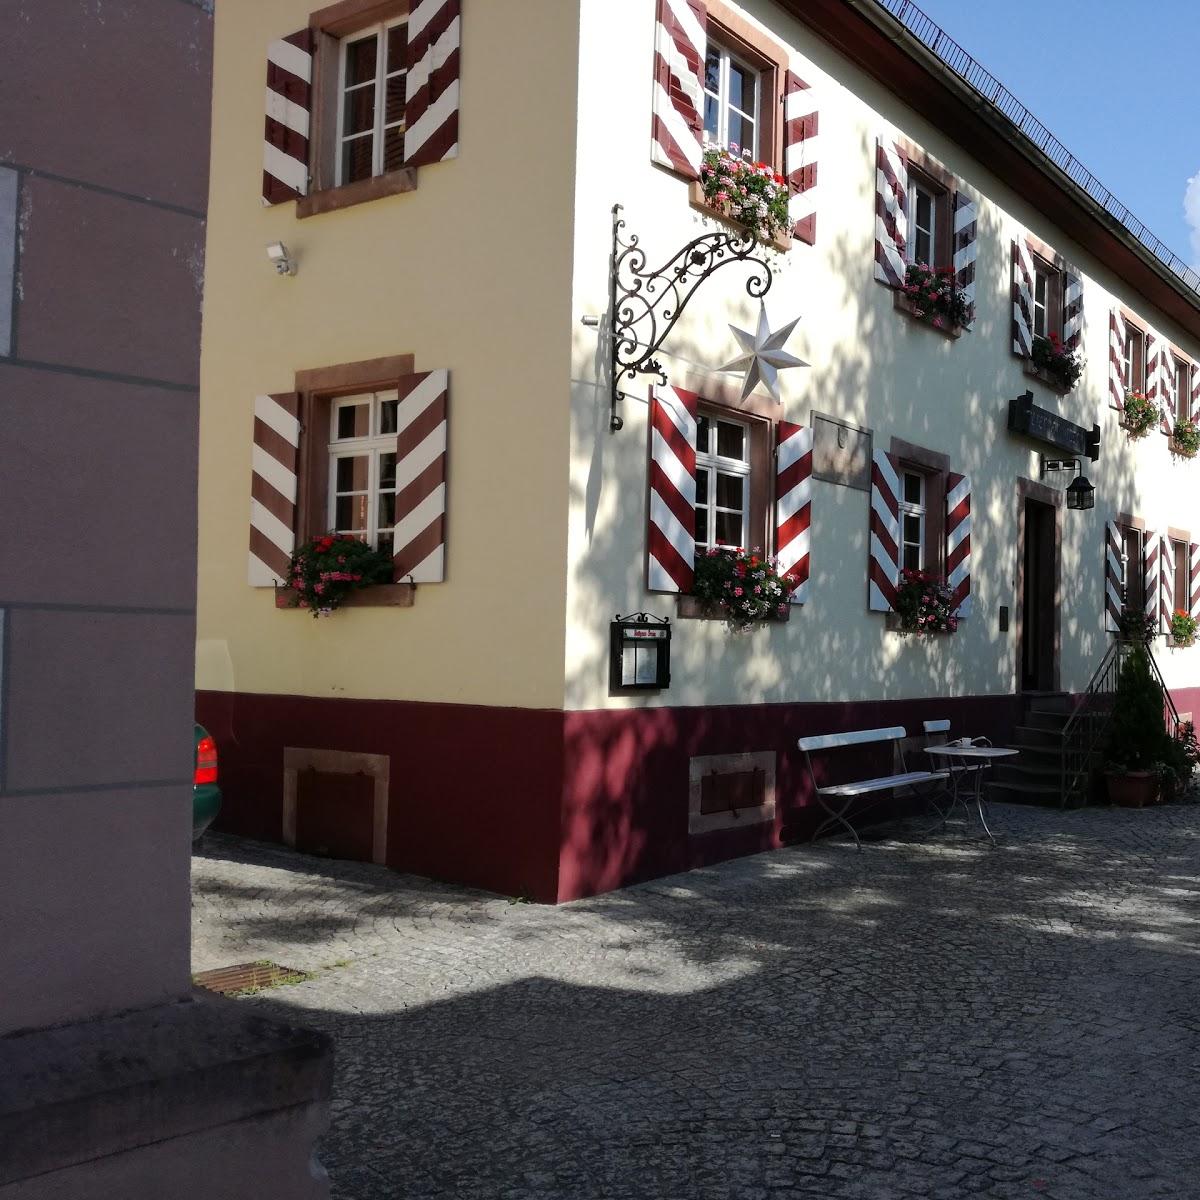 Restaurant "Gastronomie Schloss Gaisbach" in  Oberkirch